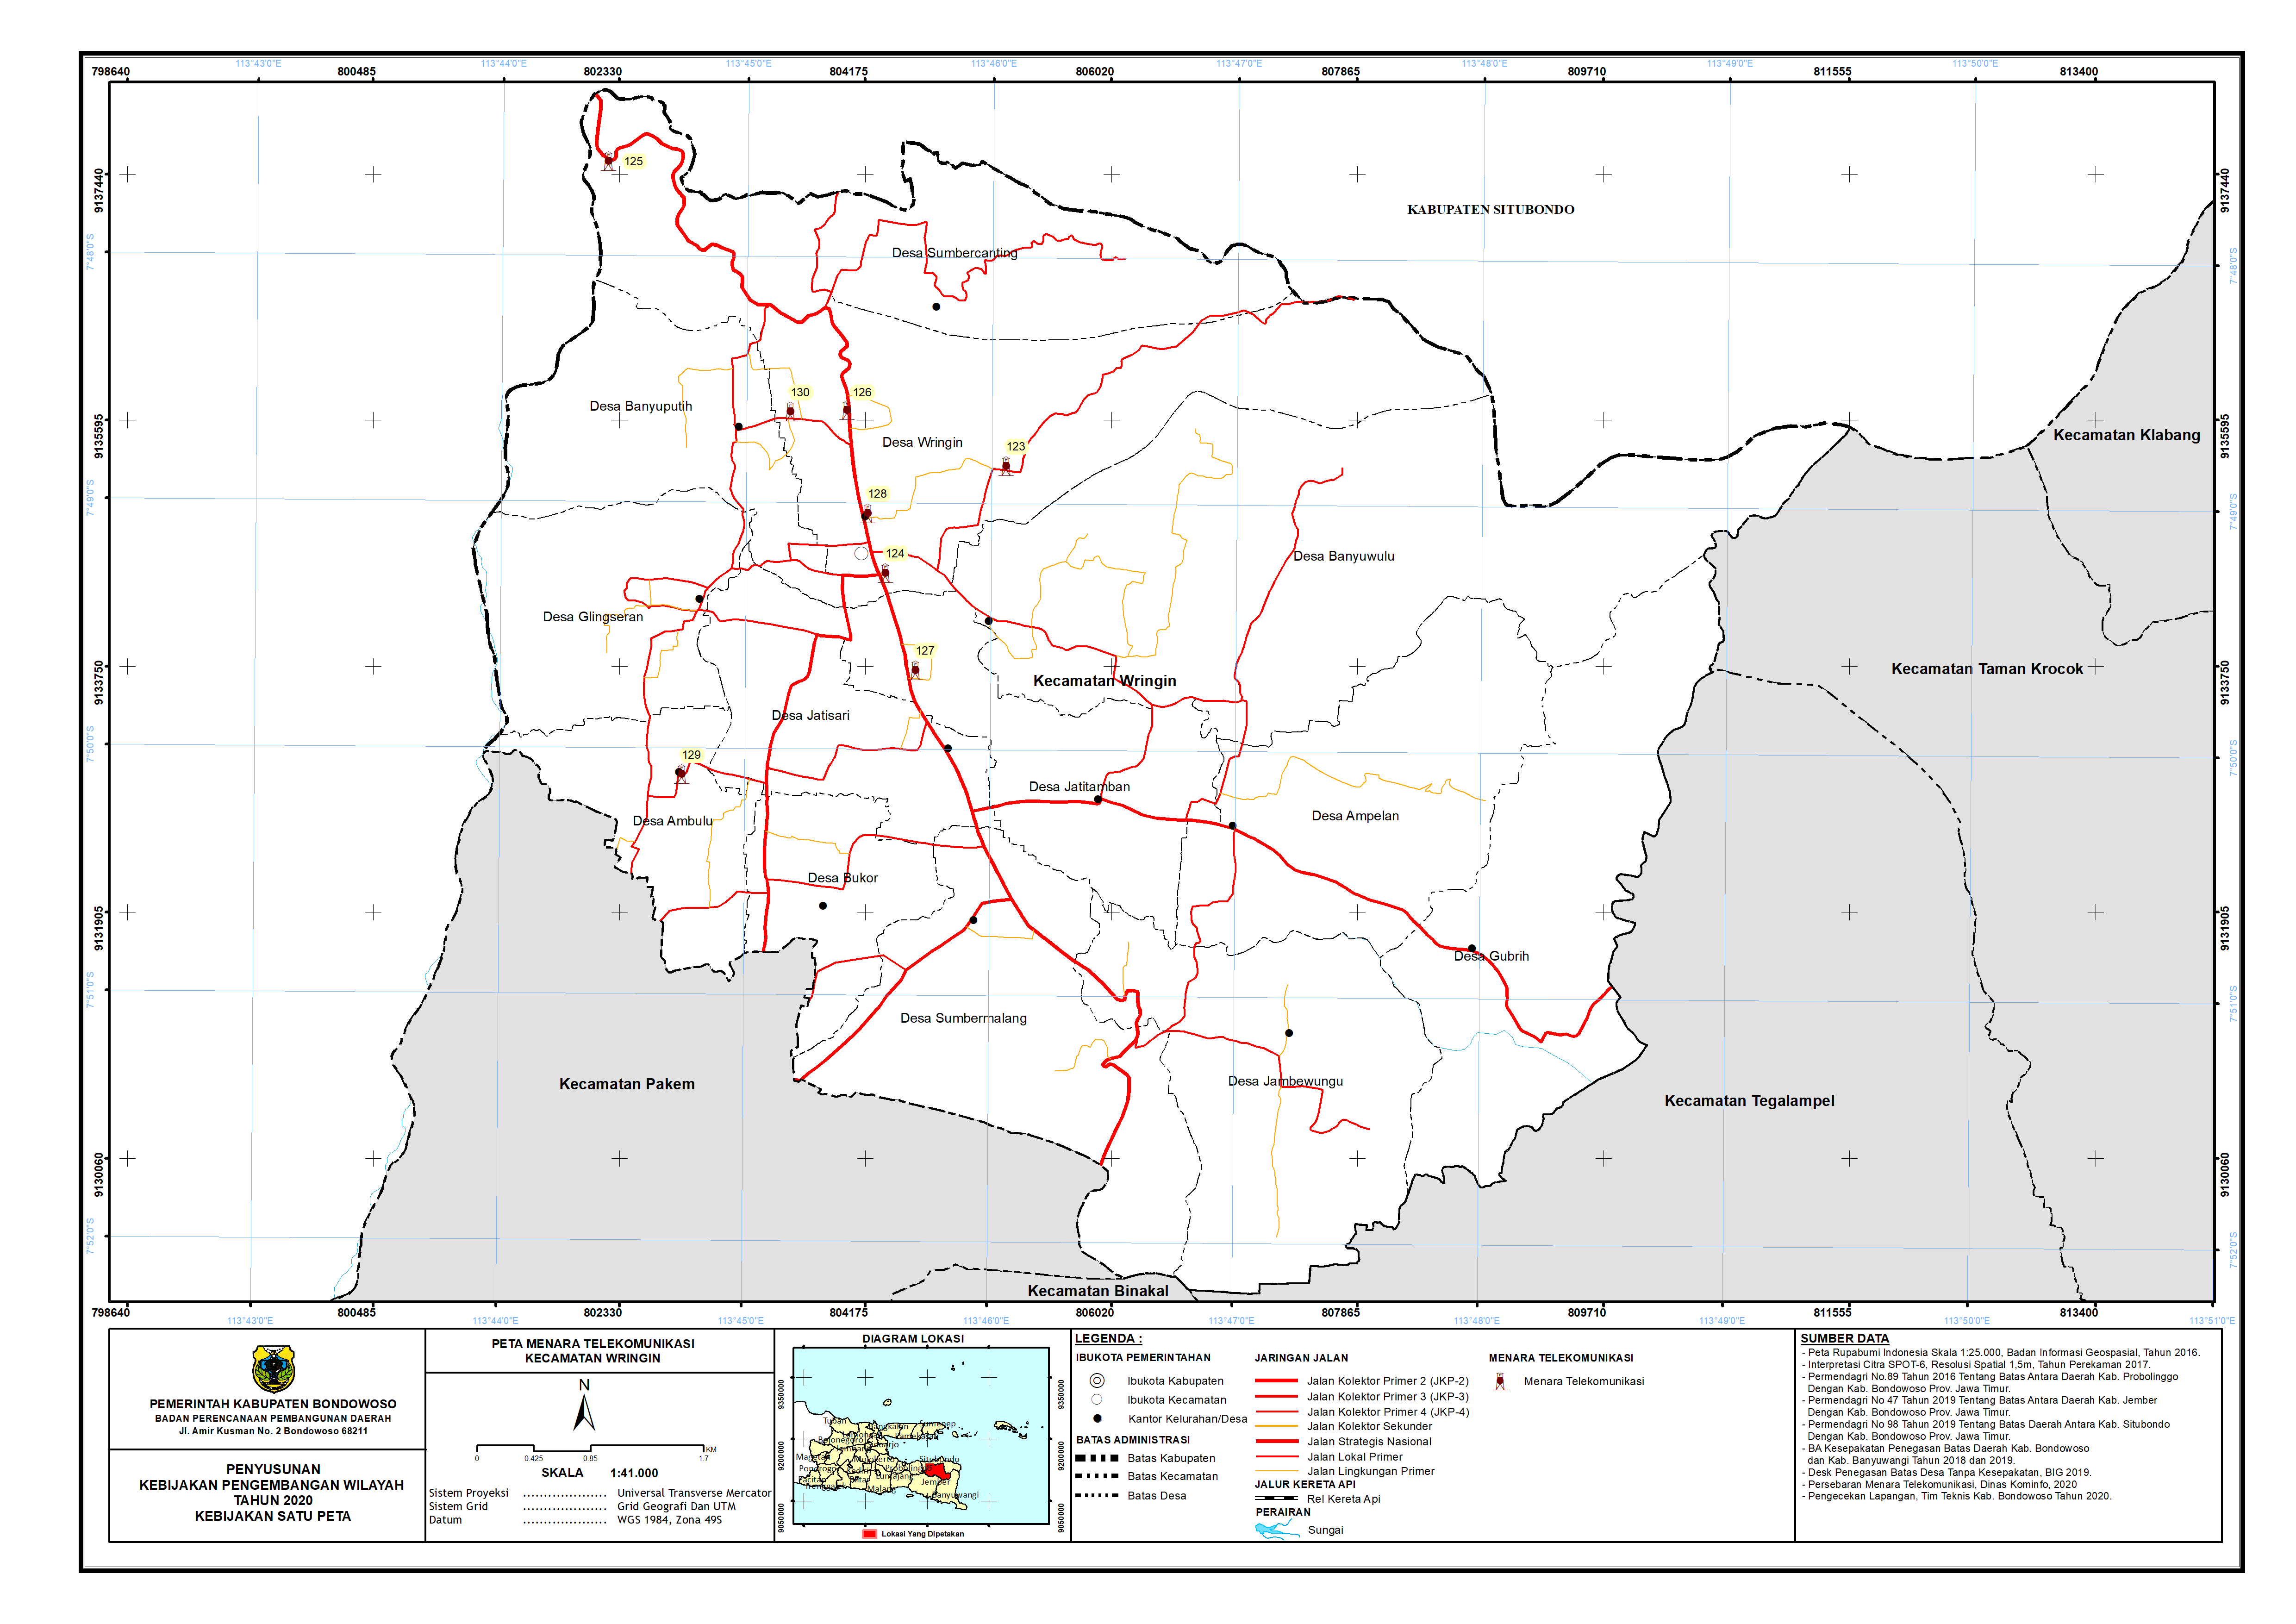 Peta Menara Telekomunikasi Kecamatan Wringin.png